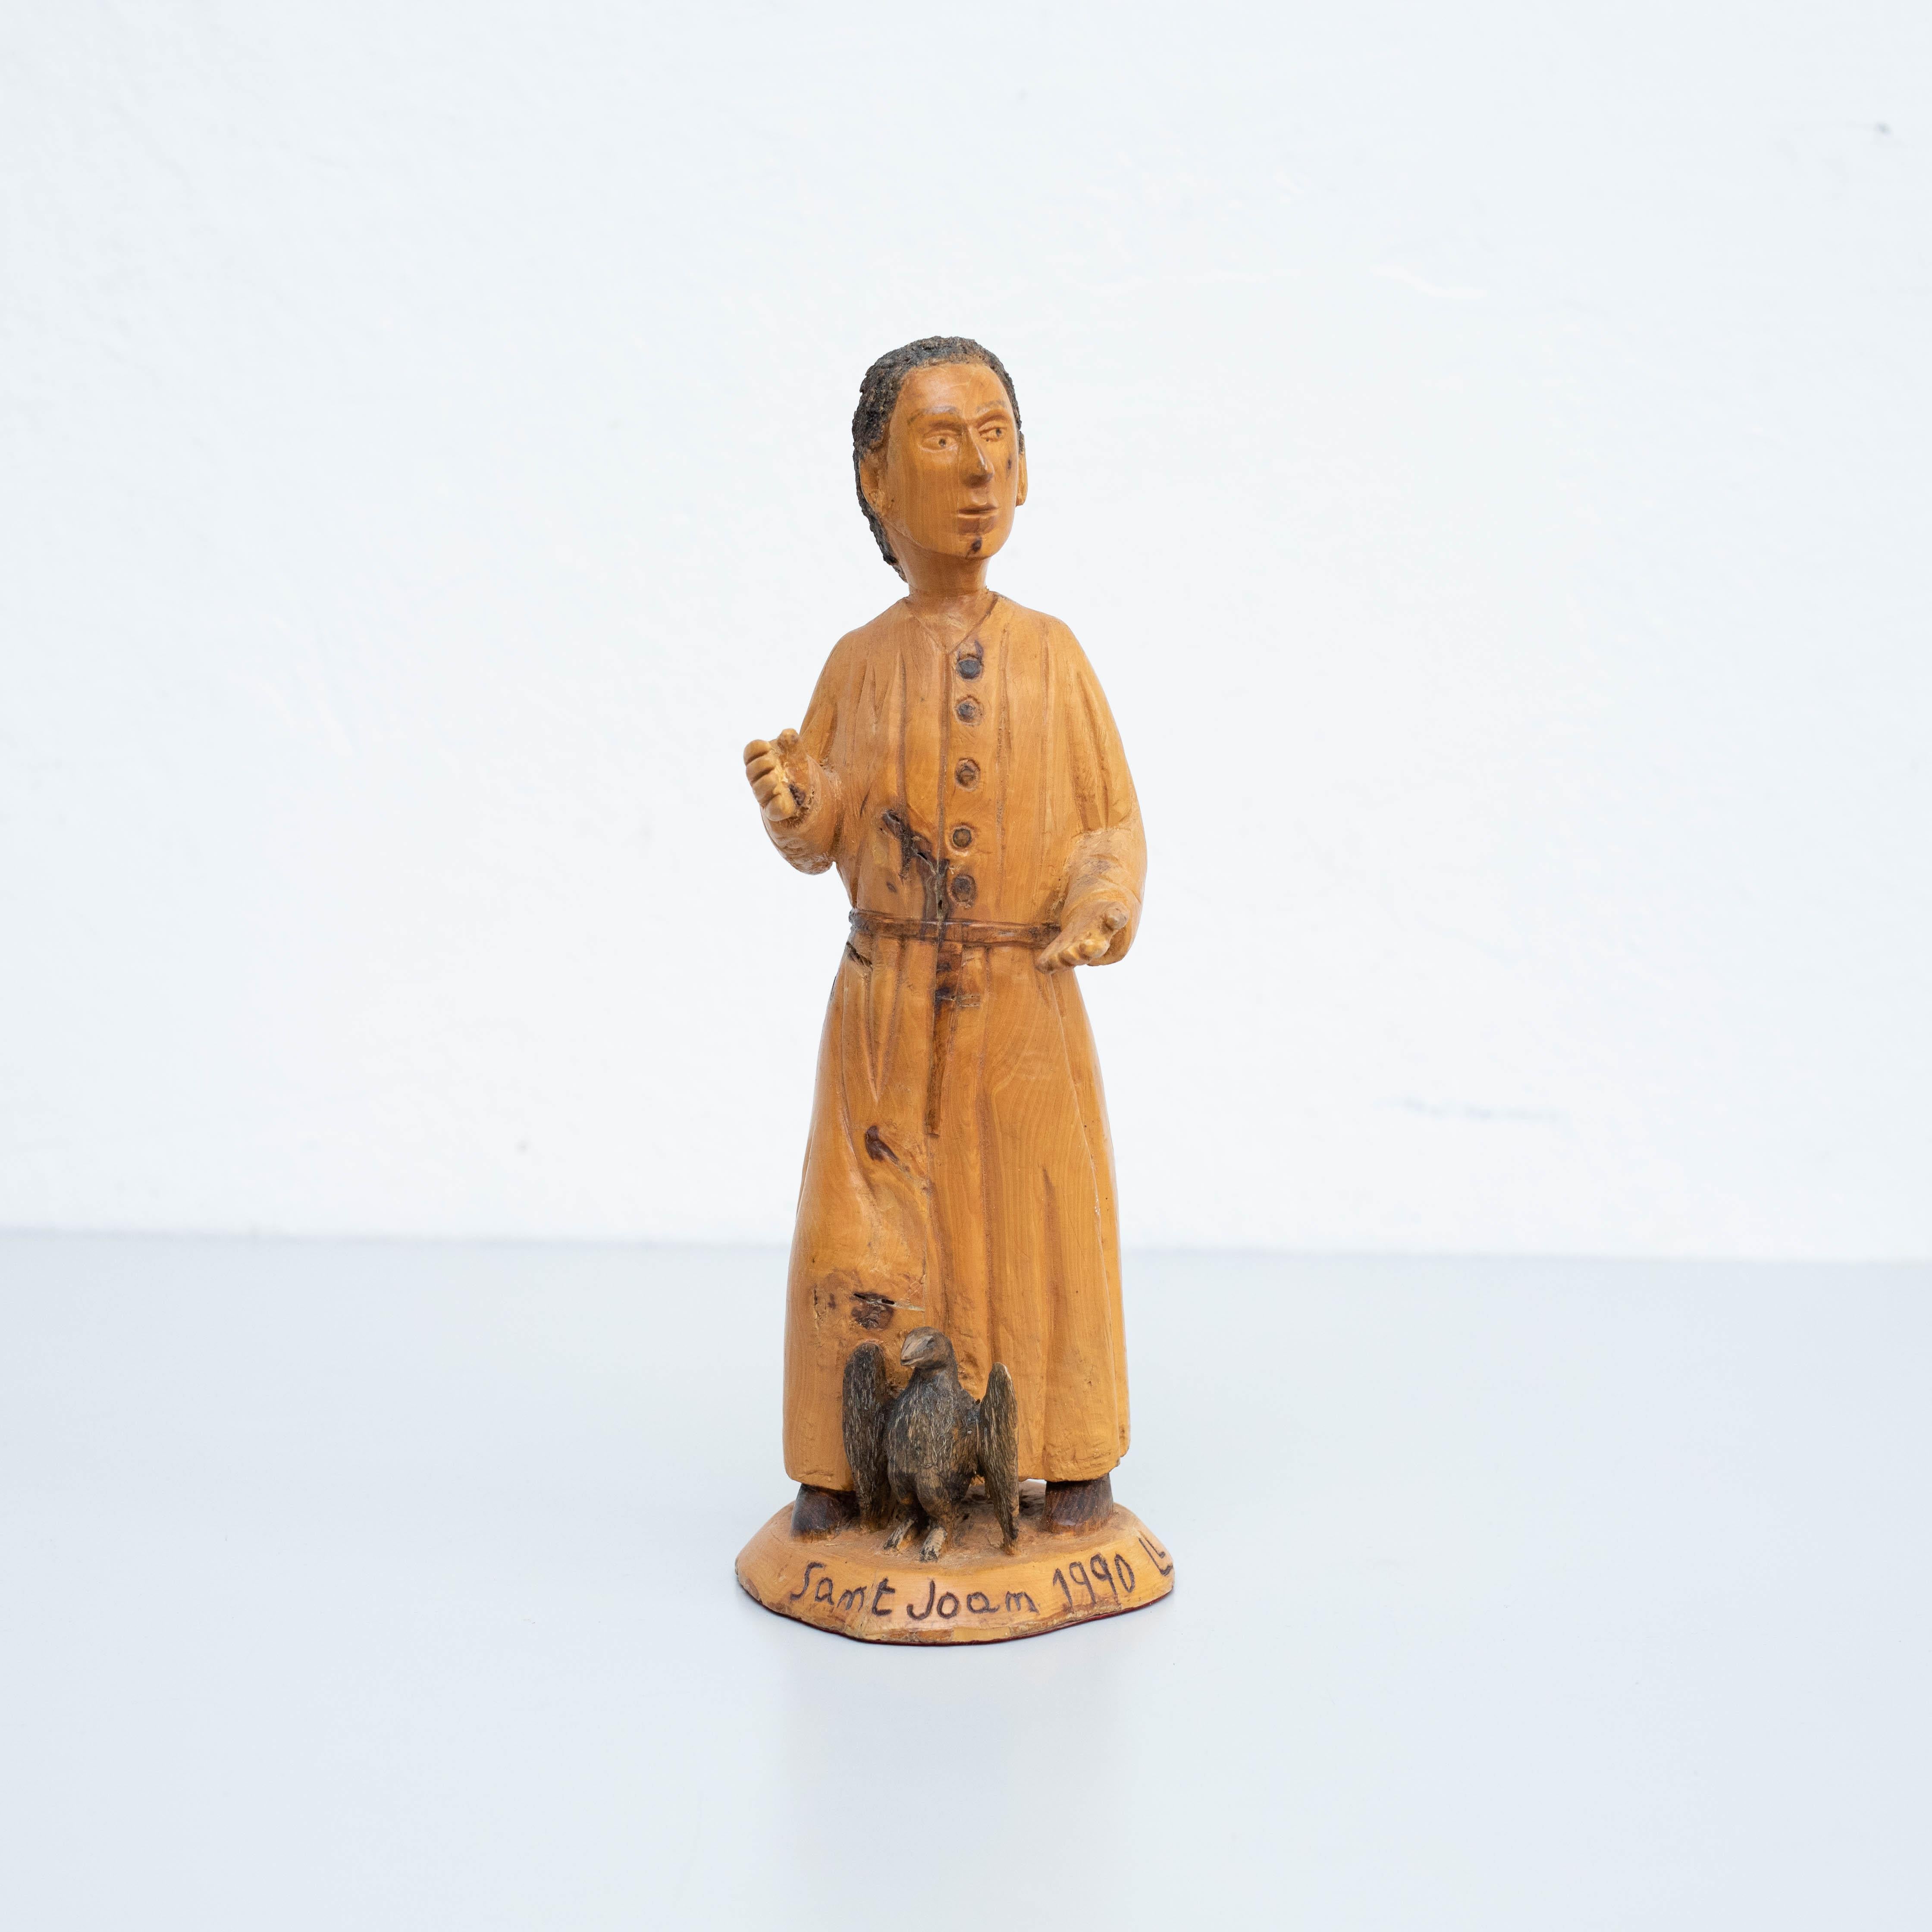 Traditionelle hölzerne Pastoral Art Saint Joan Skulptur.
Handgefertigt in den katalanischen Pyrenäen, 1990.

Unterzeichnet von Ll.Pujol

Originaler Zustand mit geringen alters- und gebrauchsbedingten Abnutzungserscheinungen, der eine schöne